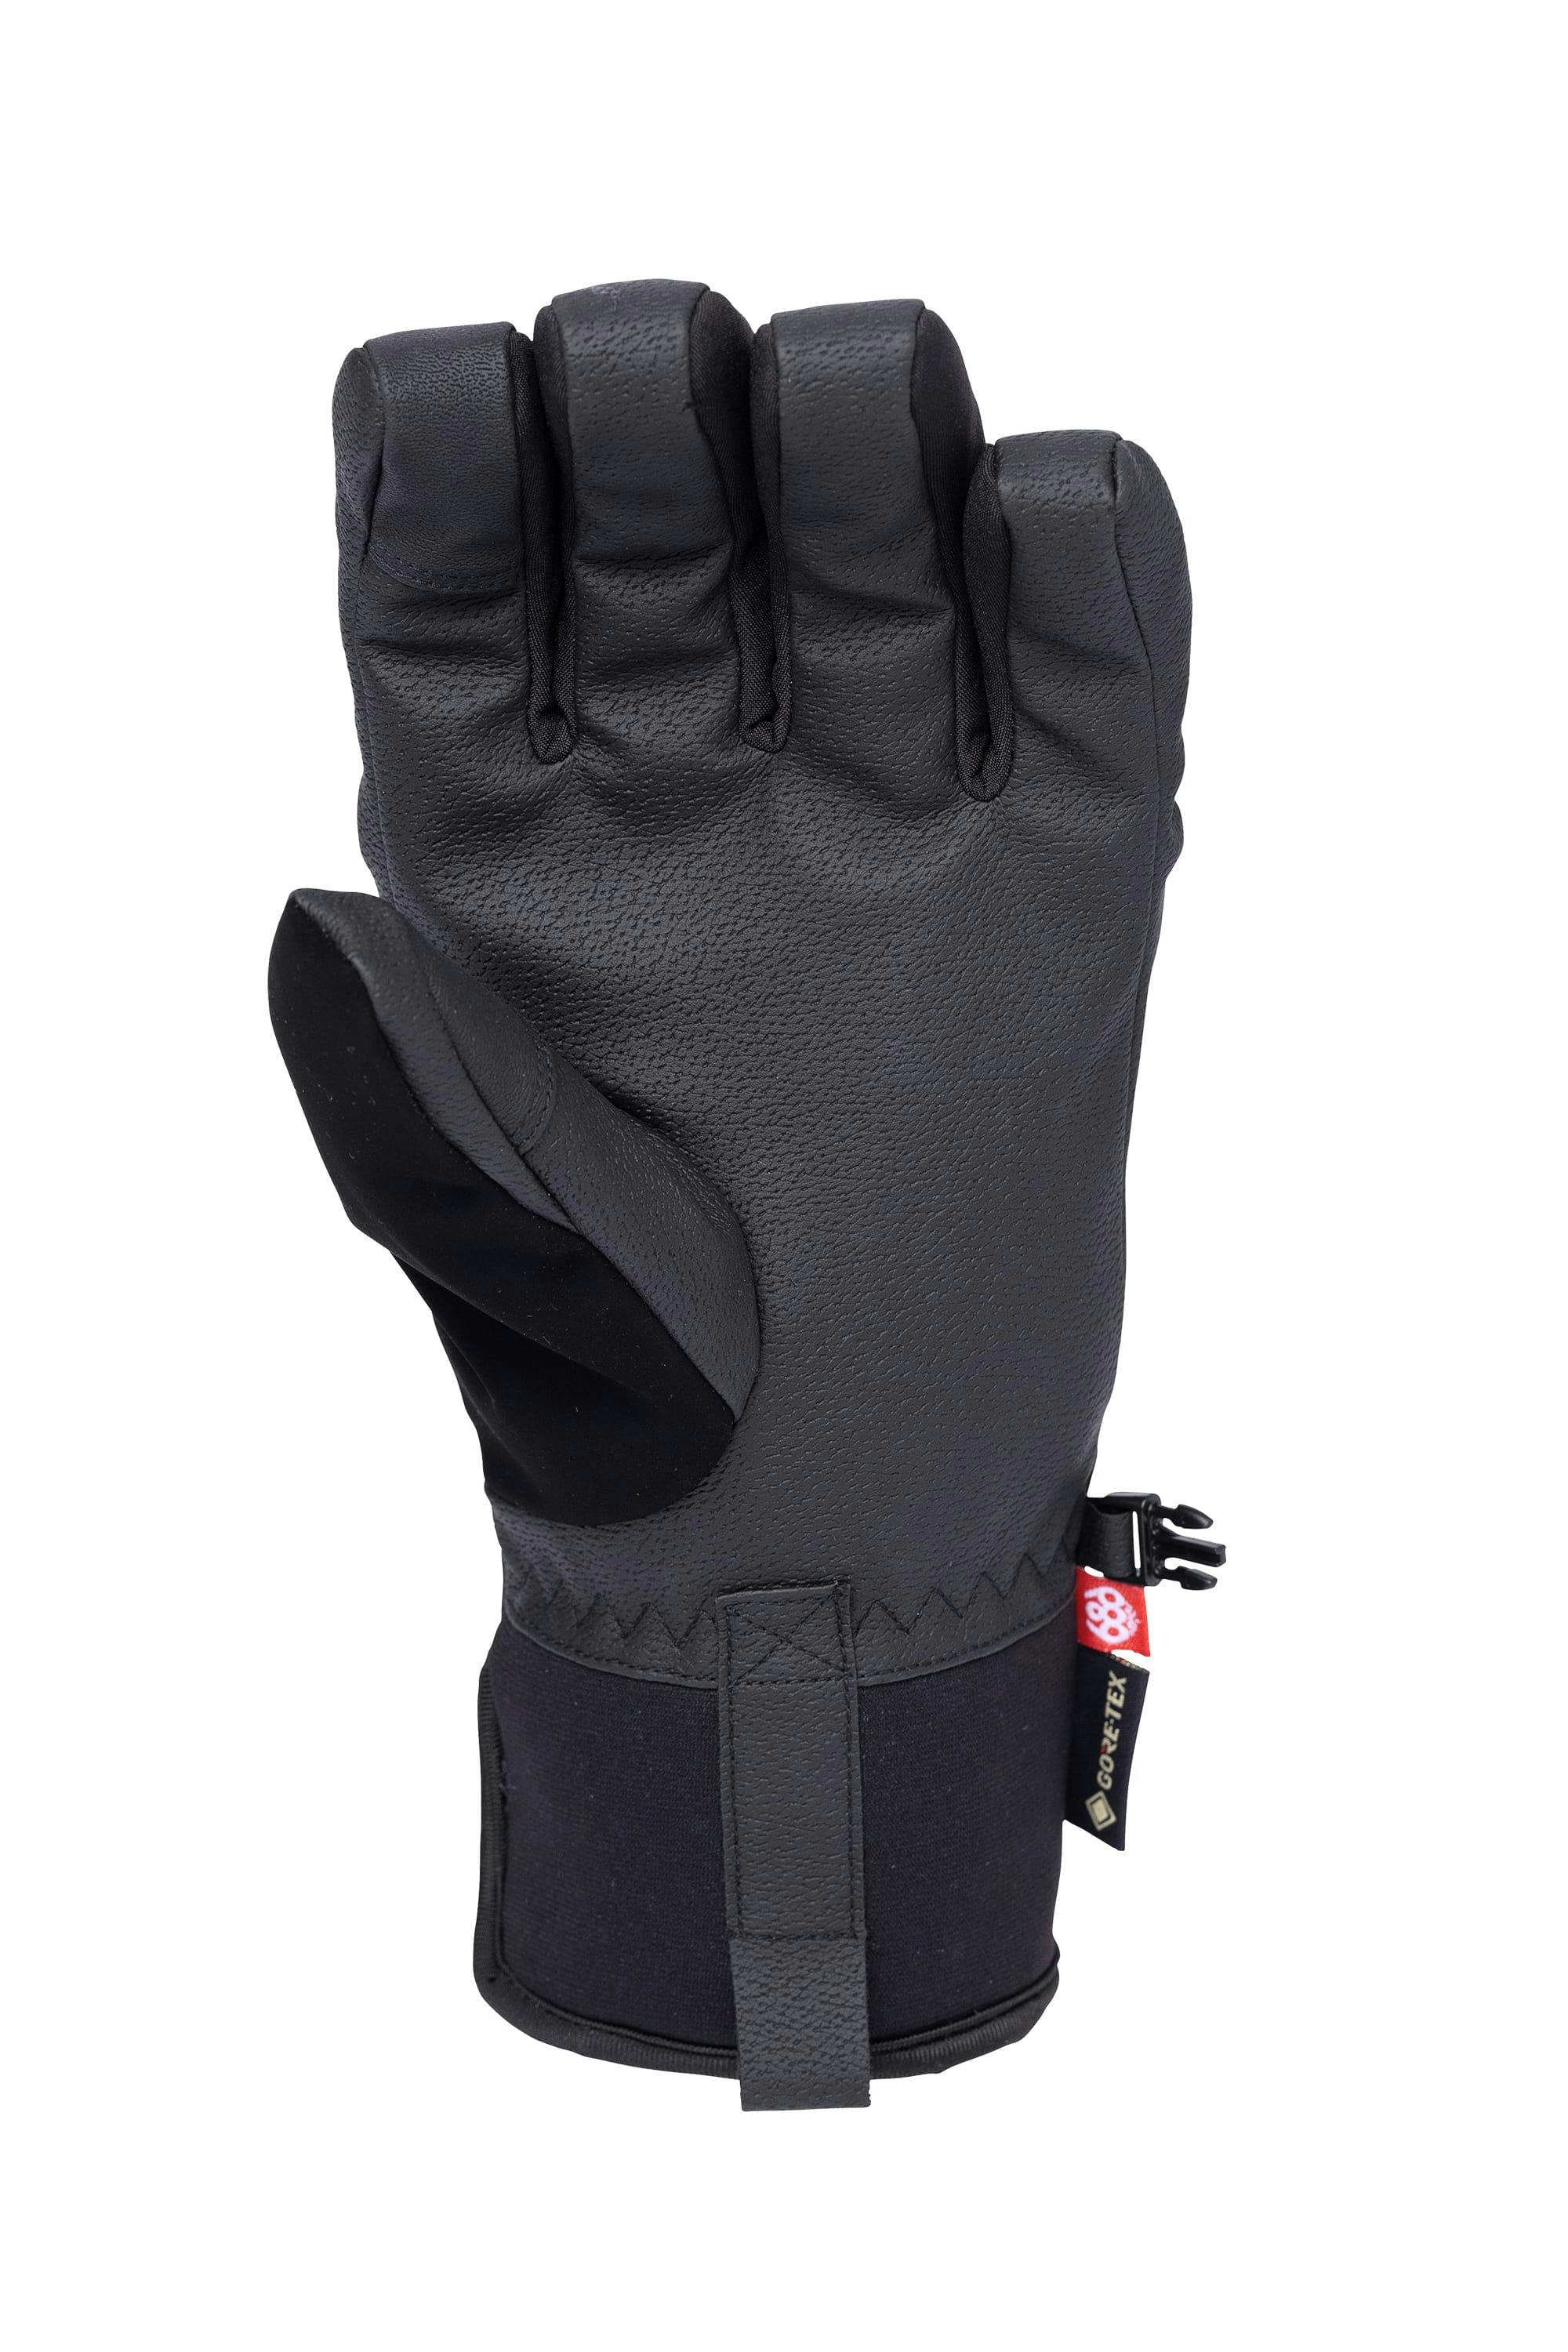 686 Men's Gore-Tex Linear Under Cuff 3L Insulated Glove